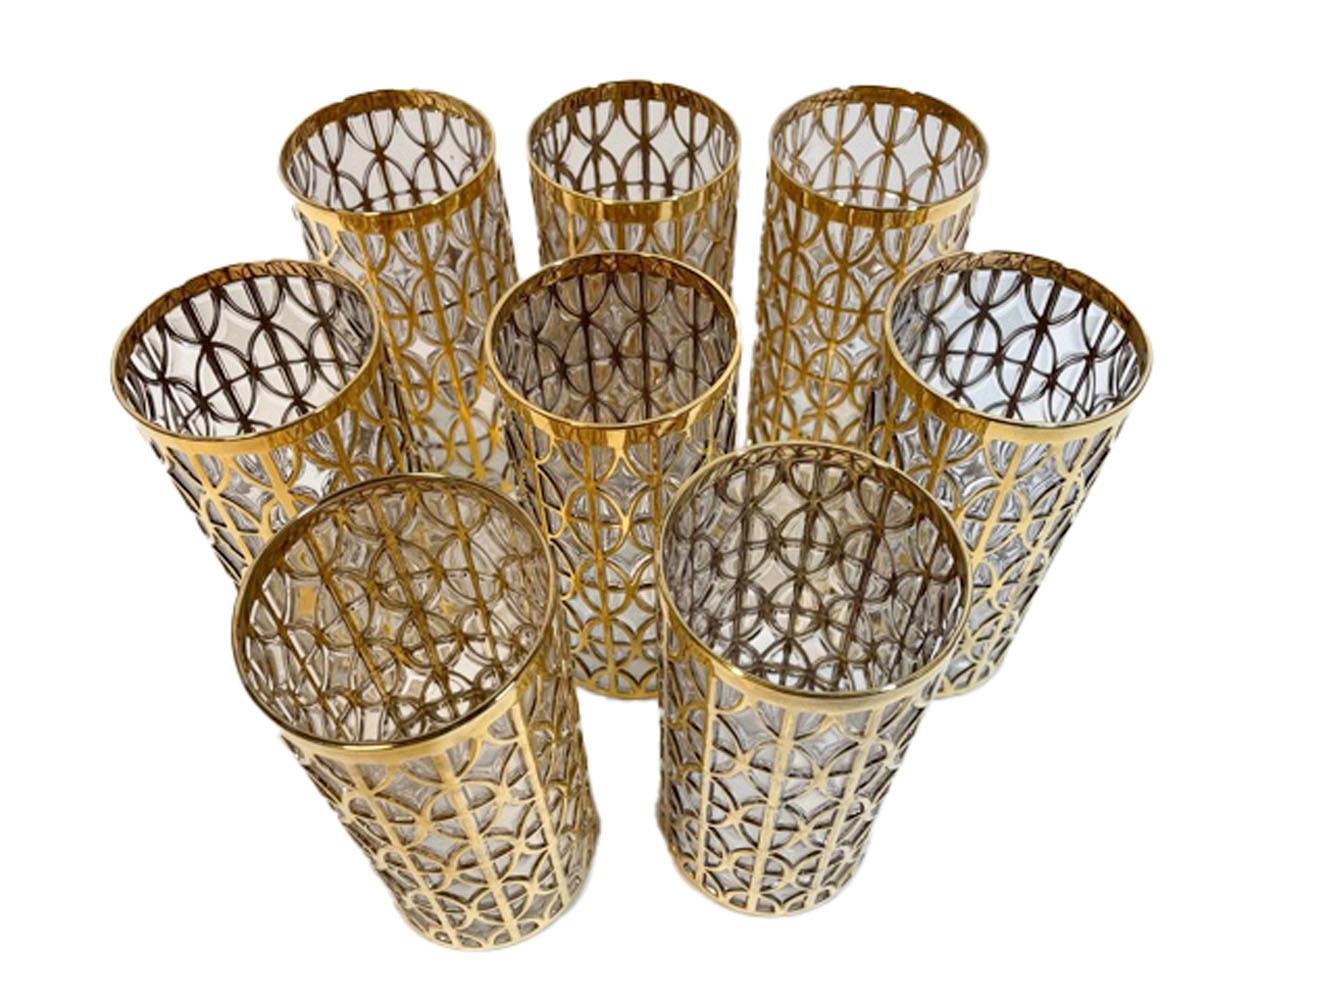 Ensemble de 8 verres highball de style Mid-Century Modern fabriqués par Imperial Glass Co. dans le motif Tabique de Oro. Chaque pièce est moulée avec un motif en relief, les zones en relief sont ensuite dorées à l'or 22k.